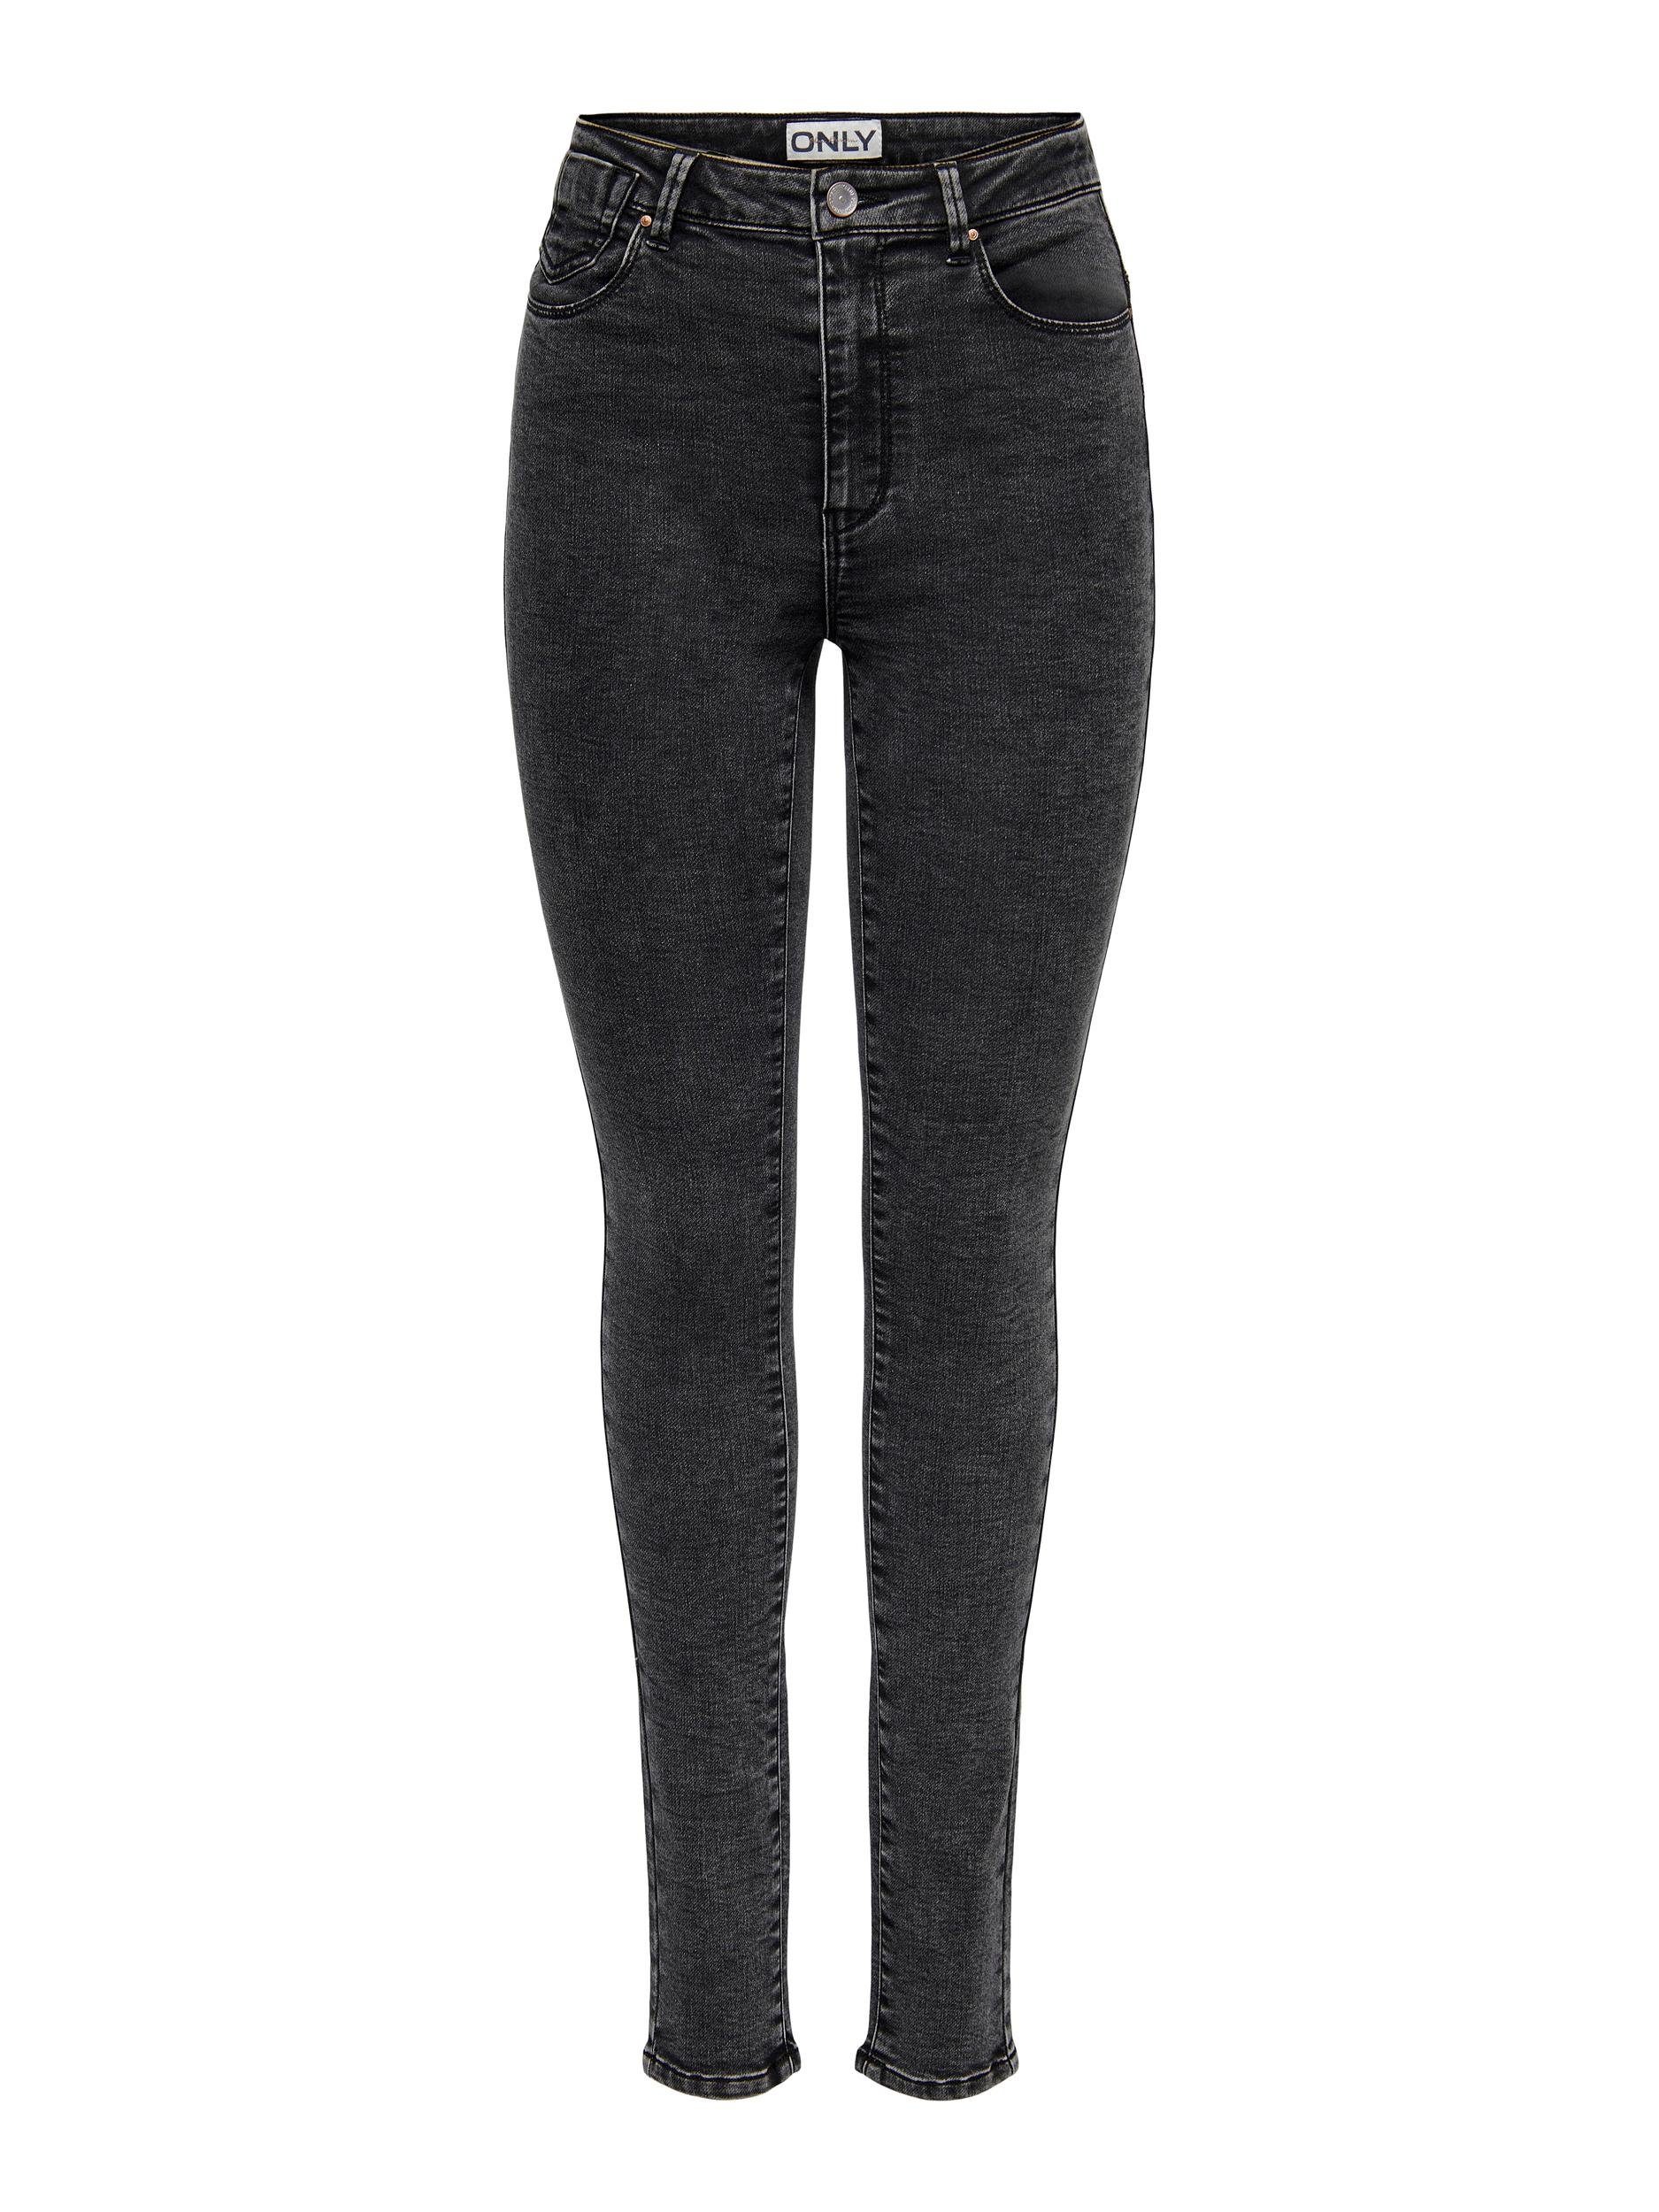 ONLY 5-Pocket-Jeans ONLFOREVER HIGH JOGG HW Washed SKINNY Black DNM